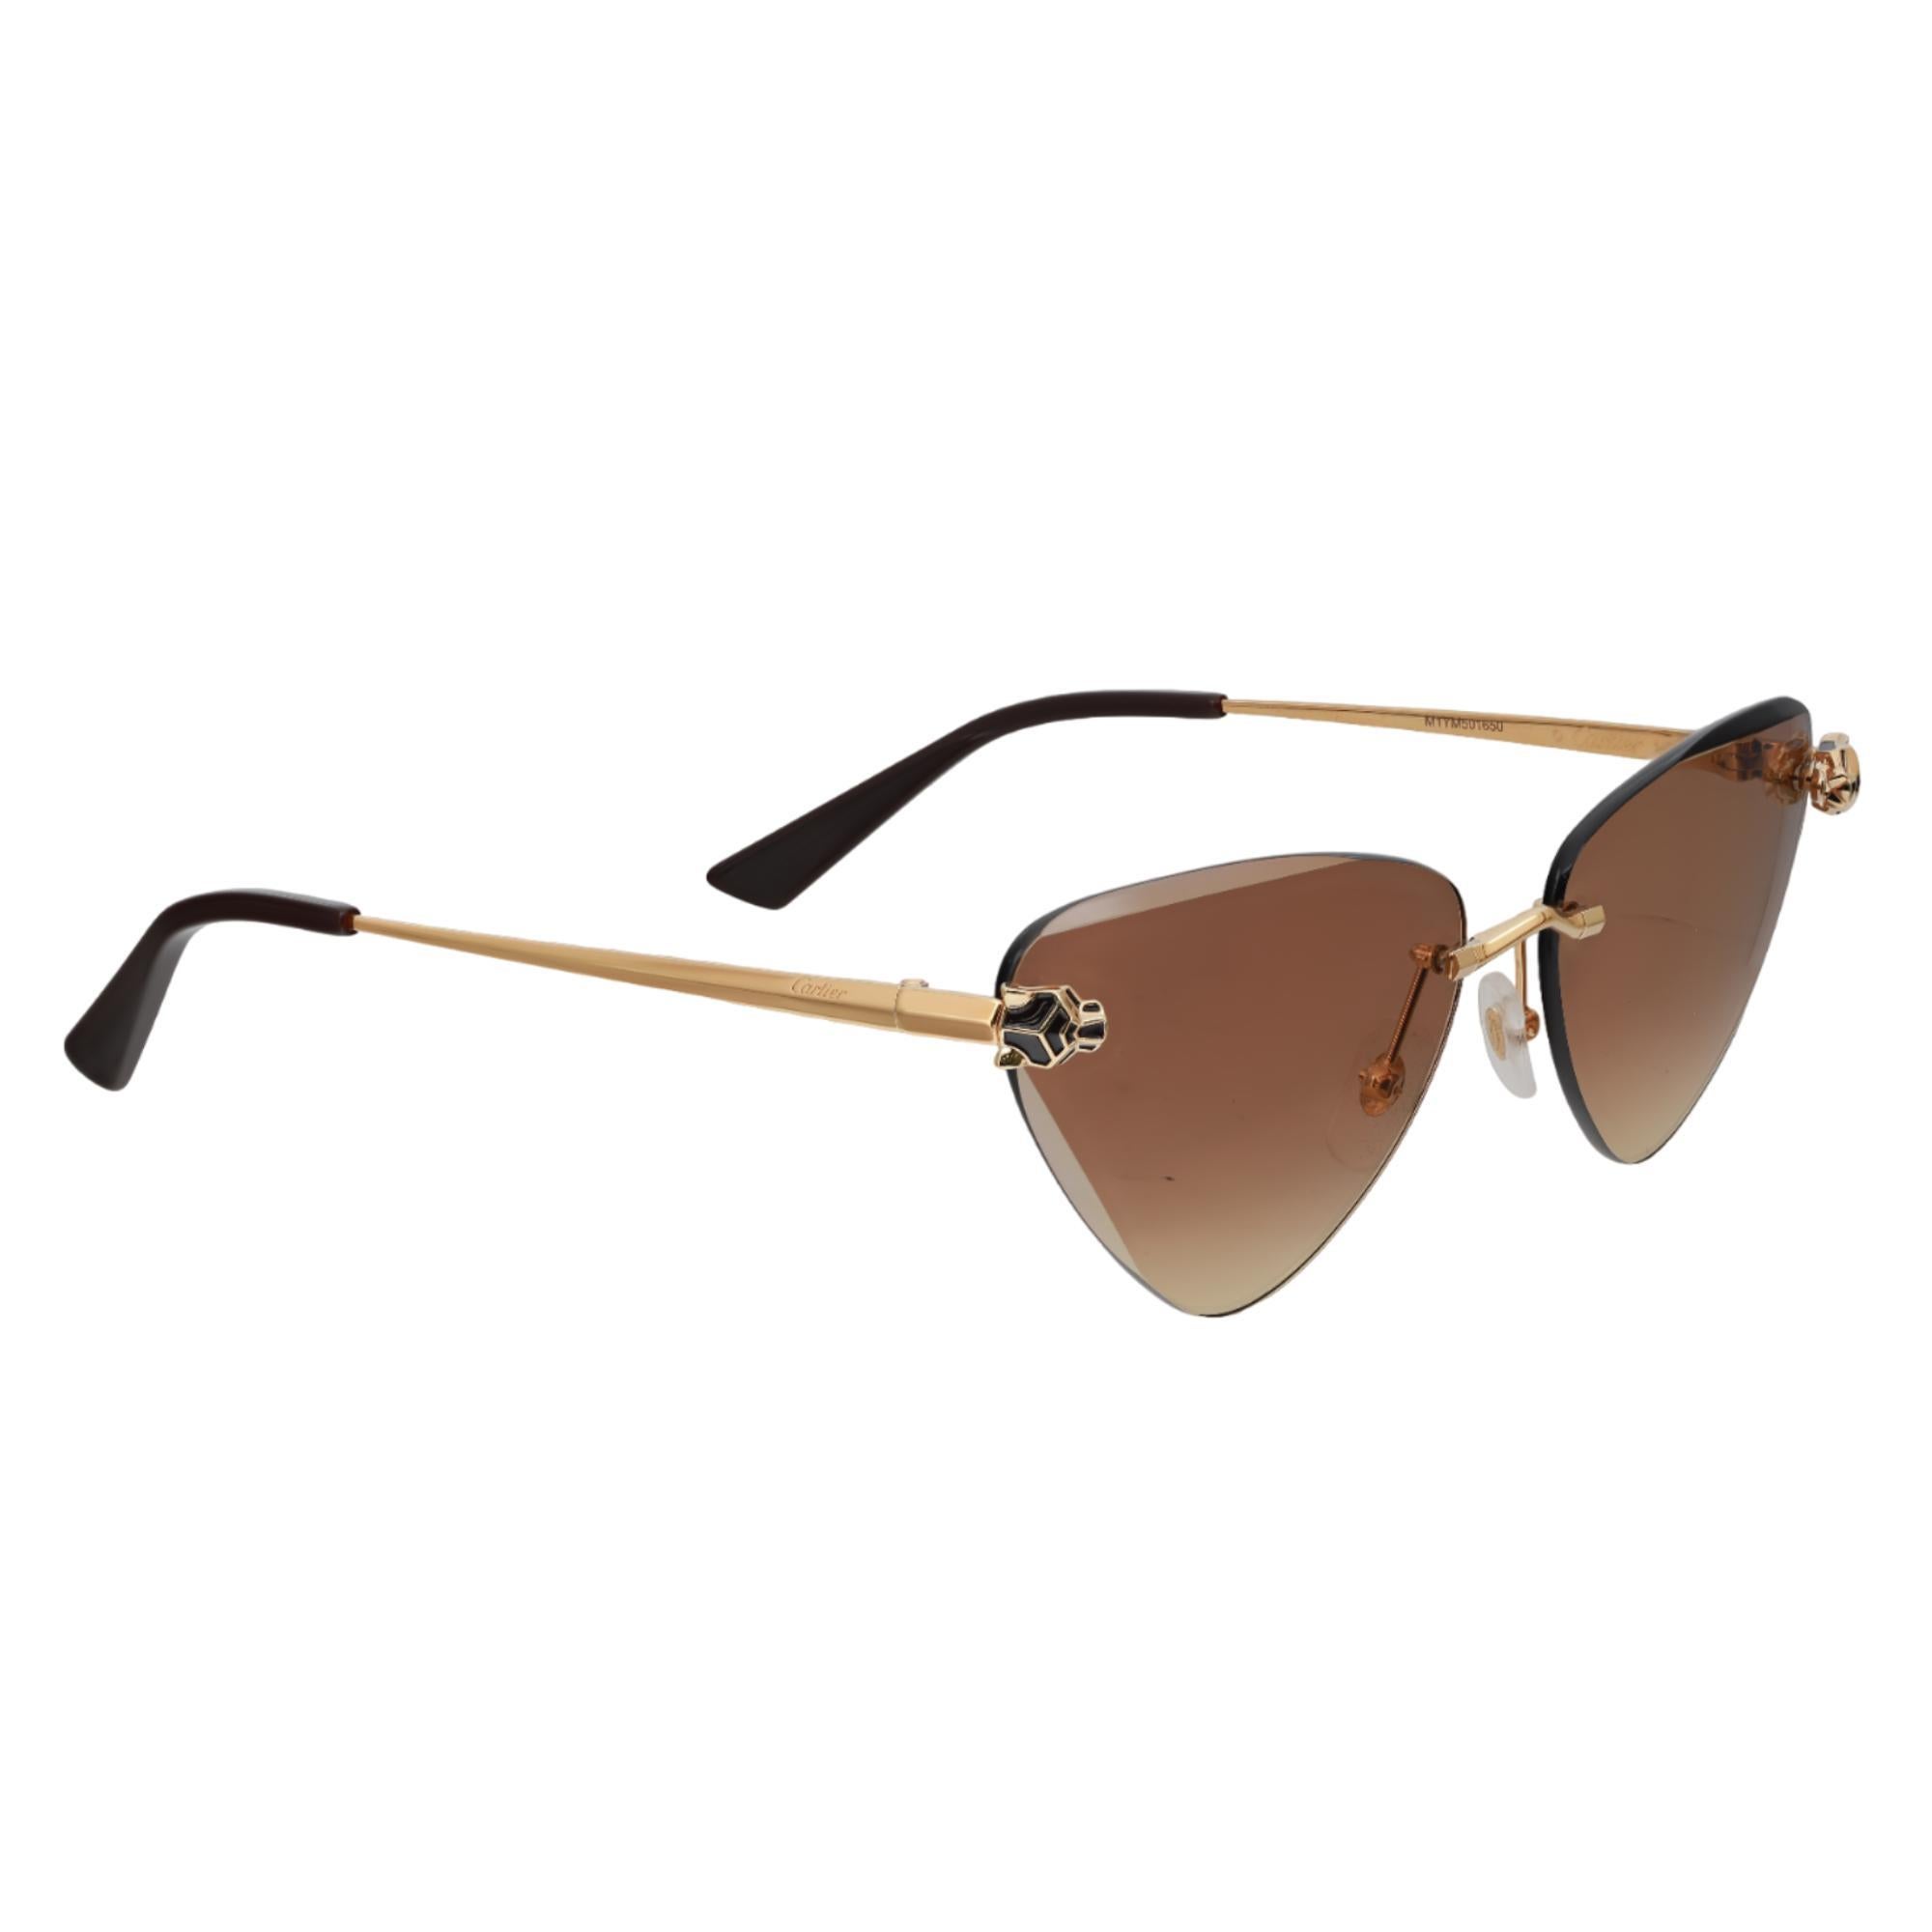 Diese schicke und moderne Cartier Panthere De Cartier Sonnenbrille ist der Inbegriff von purer Eleganz. Diese Sonnenbrille besteht aus einem nicht umrandeten Metallrahmen mit einem glatten goldenen Finish für die stilbewussten Menschen von heute.